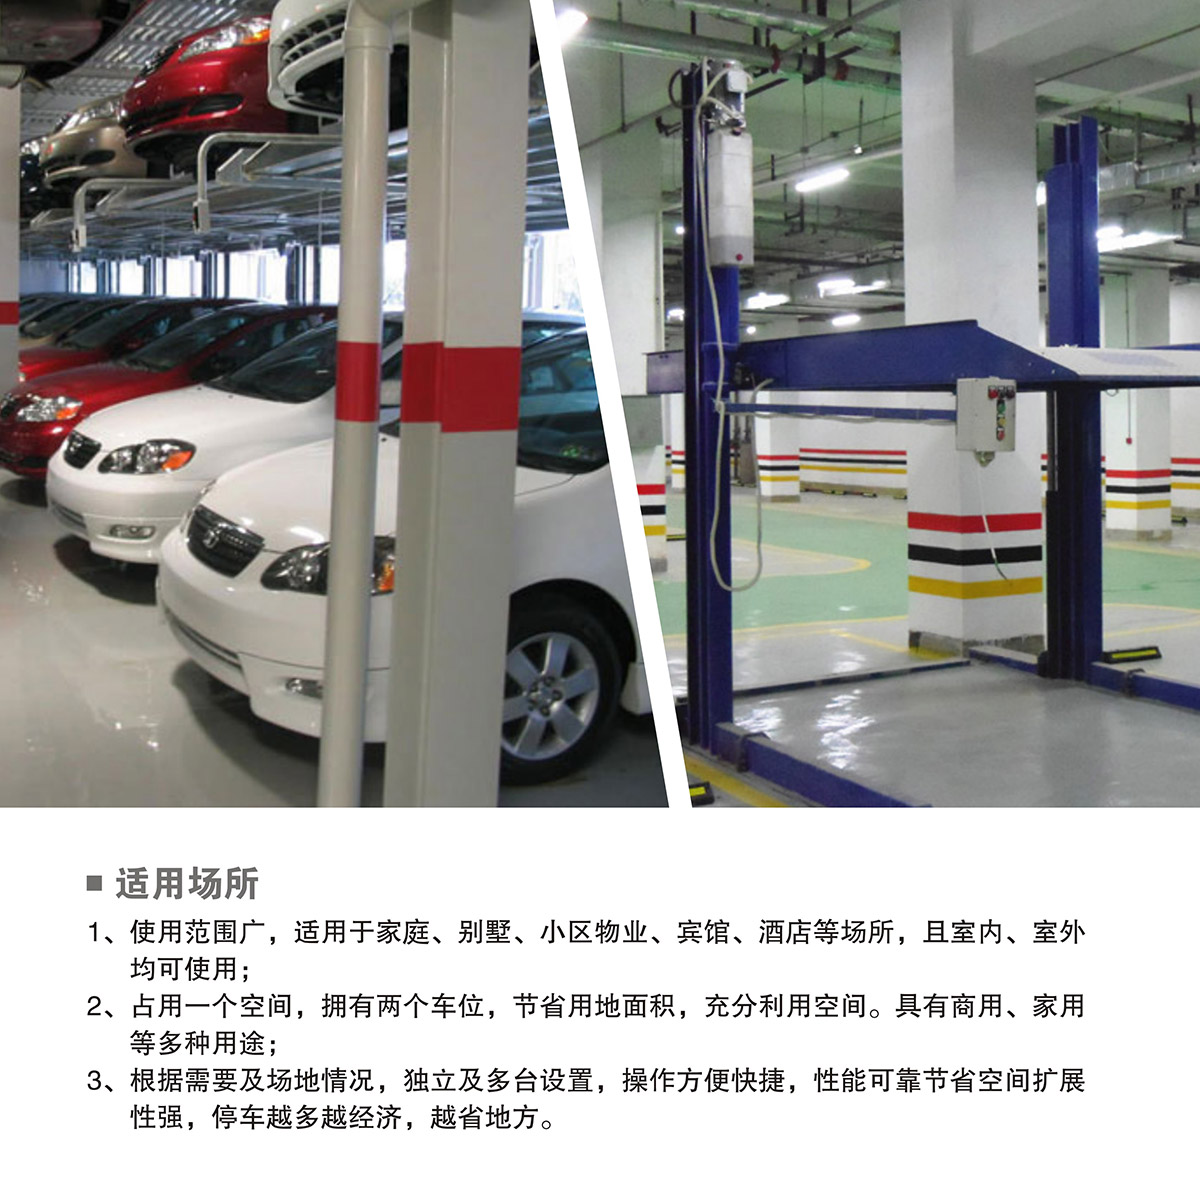 贵阳PJS两柱简易升降立体车库设备适用场所.jpg